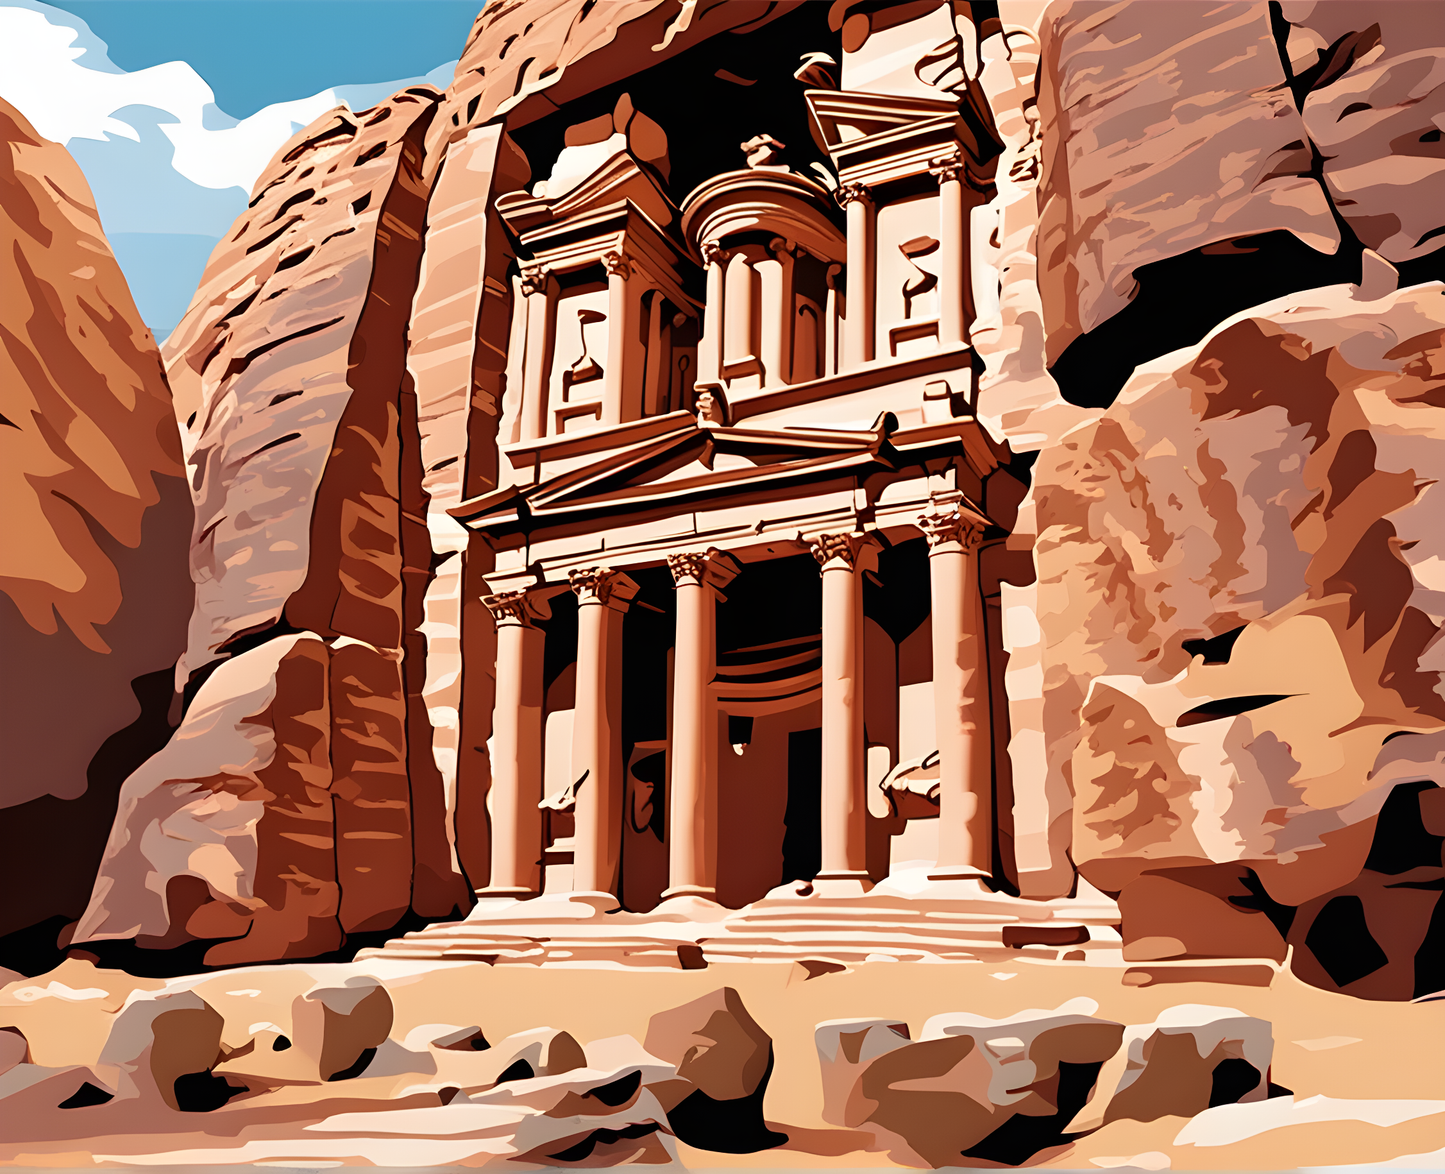 Amazing Places OD (229) - Petra, Jordan - Van-Go Paint-By-Number Kit